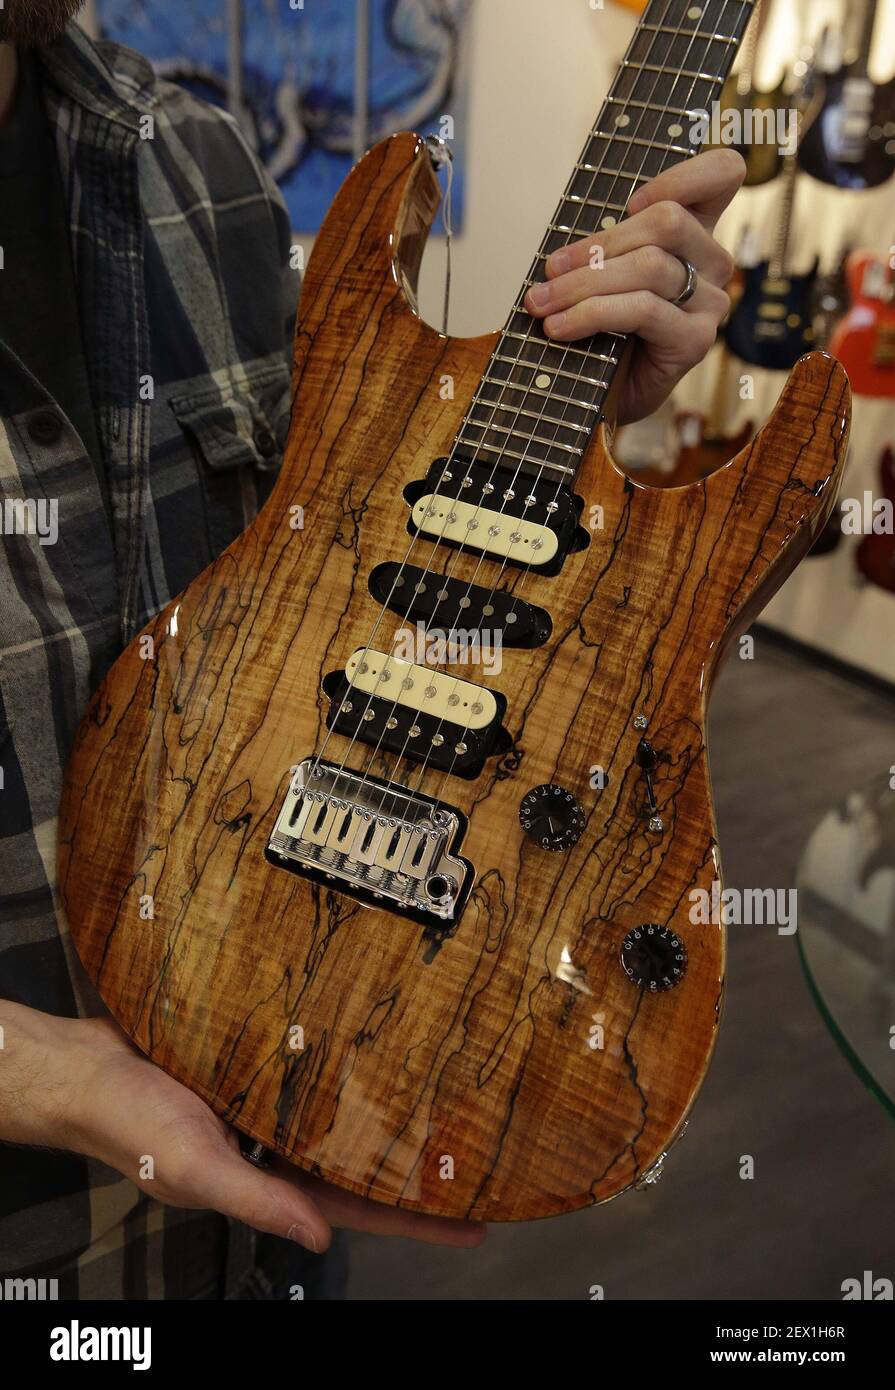 Noah Saydel, responsable marketing de la guitare distinctive, détient une guitare  Suhr avec un haut en érable spalted et une belle finition le 28 janvier  2015 à Milwaukee, Wisconsin. Certaines de leurs